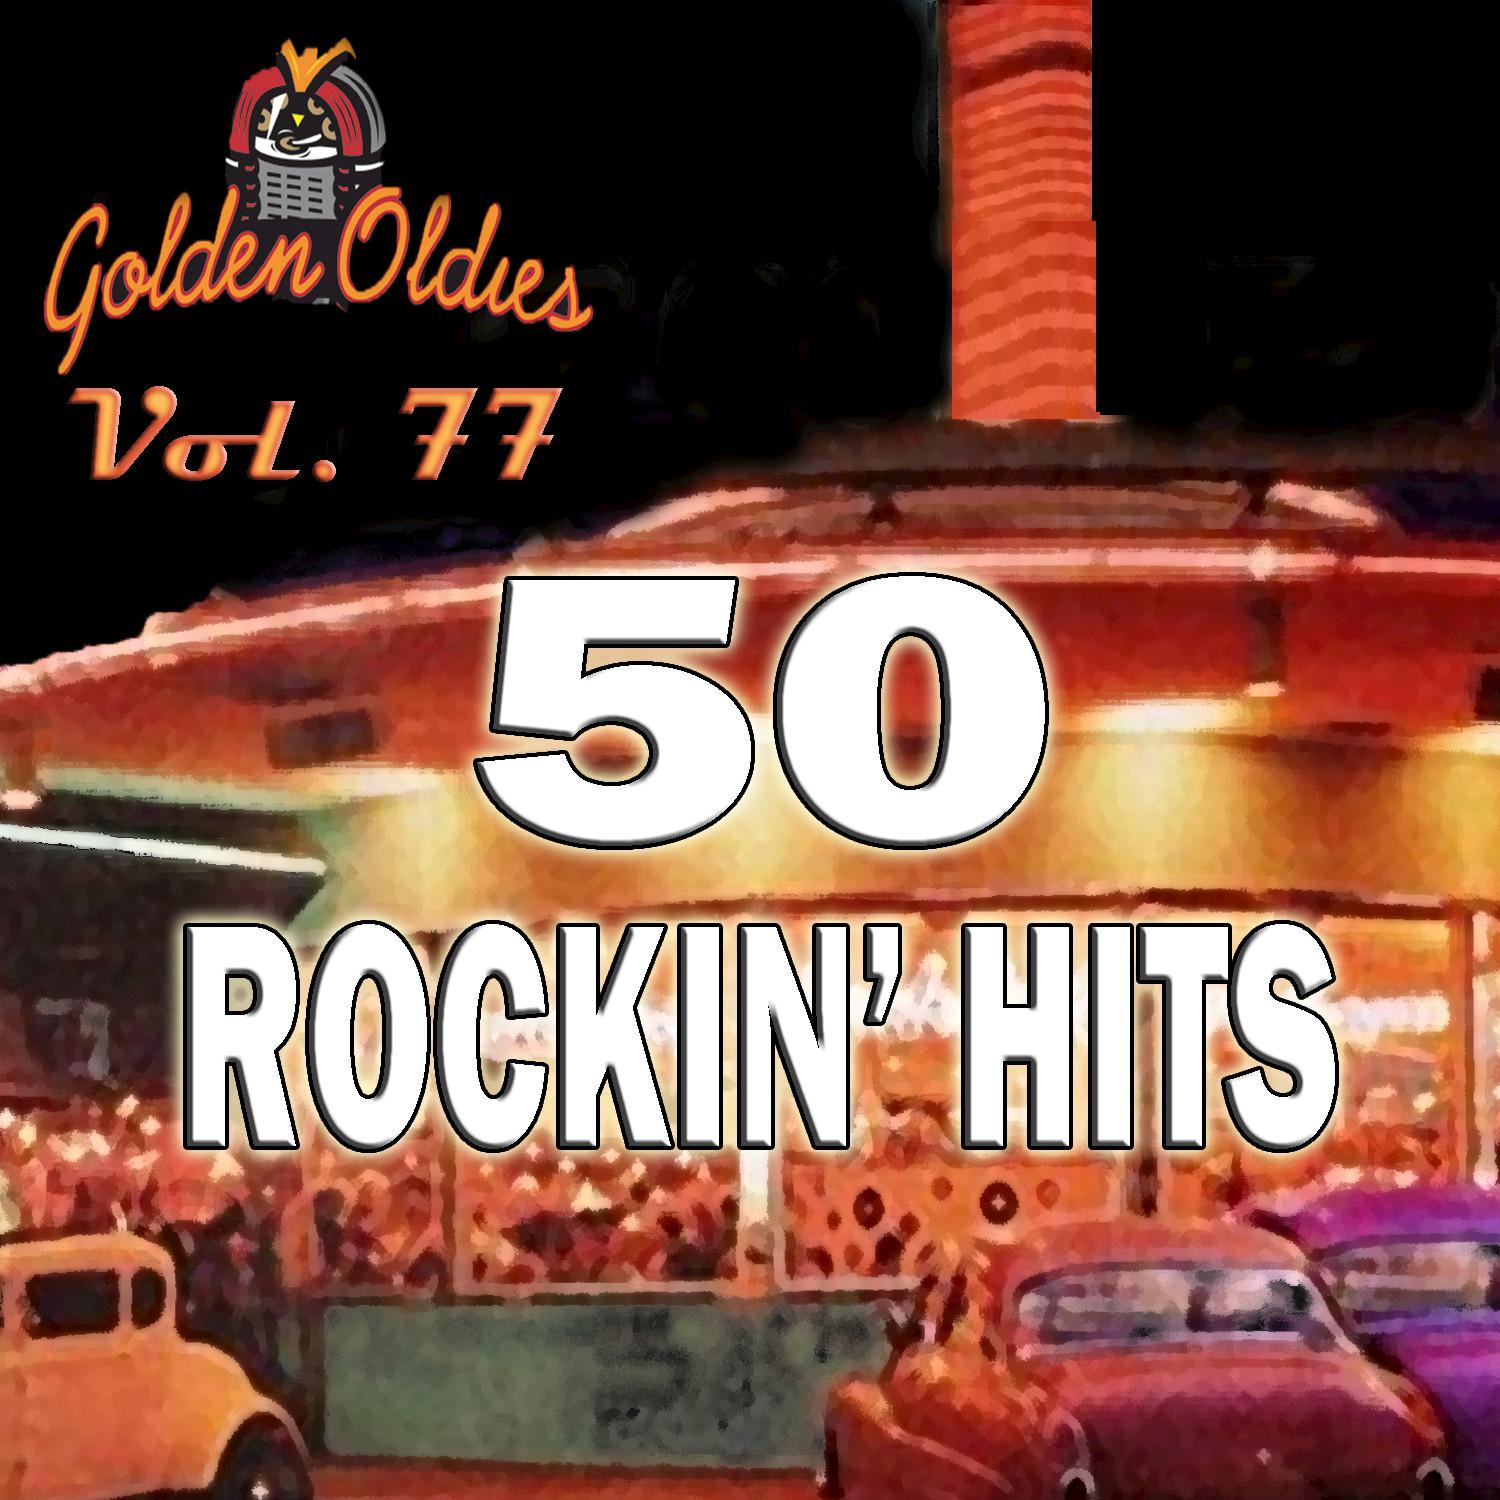 50 Rockin' Hits, Vol. 77